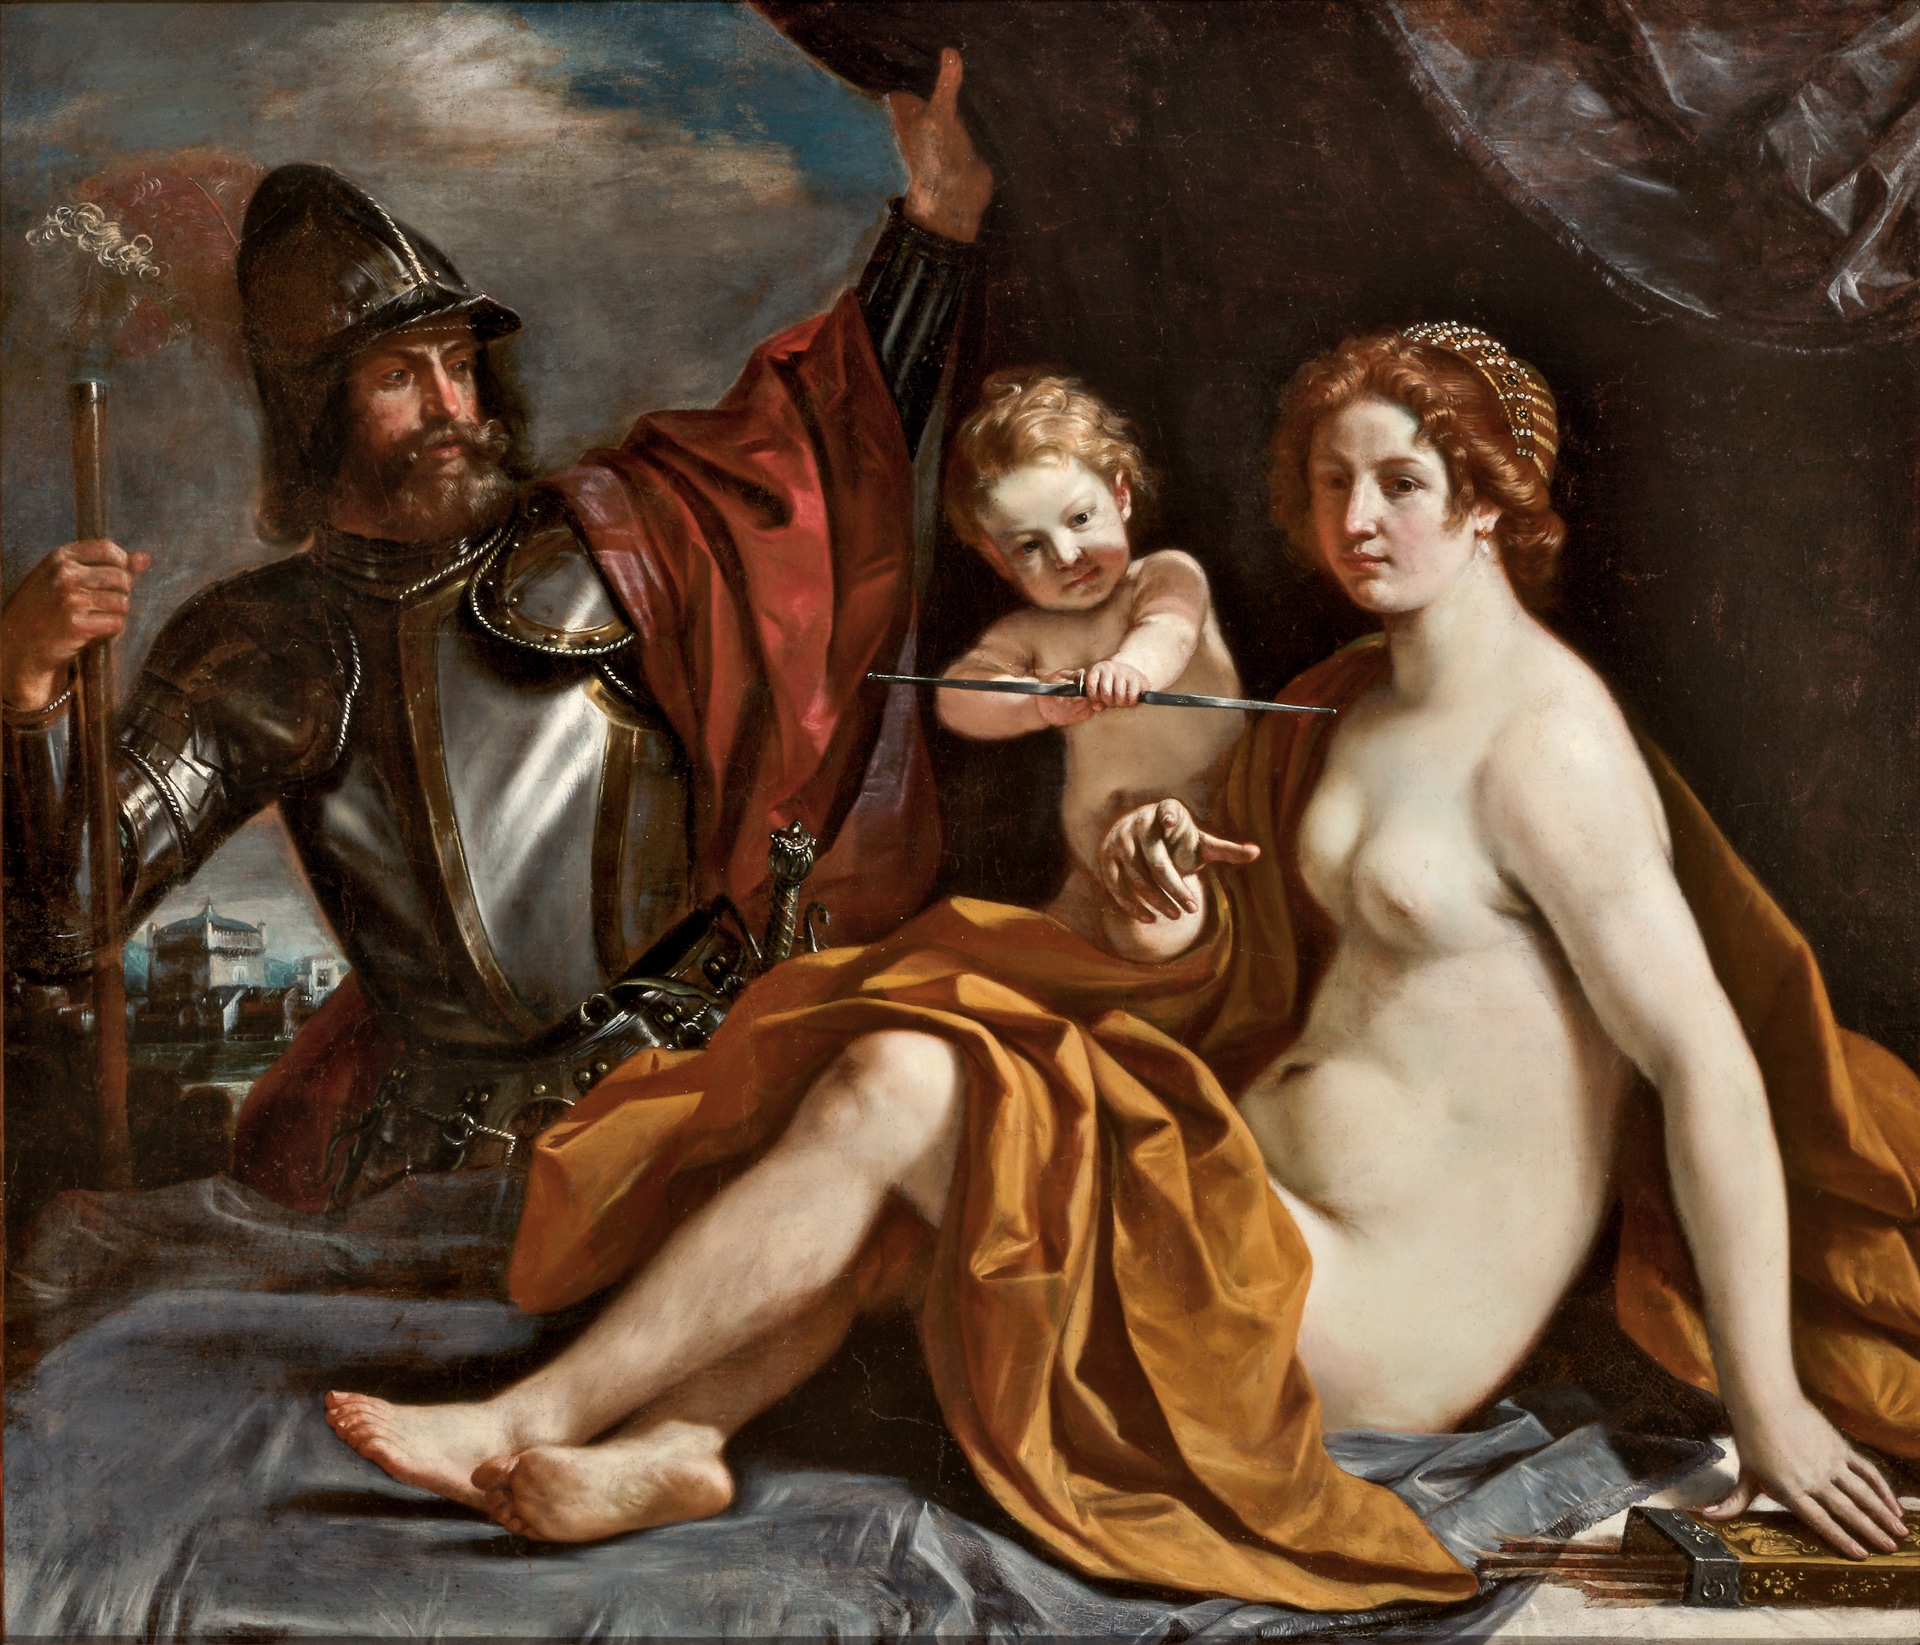 Giovanni Francesco Barbieri detto il Guercino, Venere, Cupido e Marte, 1633, olio su tavola, 139 x 161 cm, Modena, Galleria Estense.